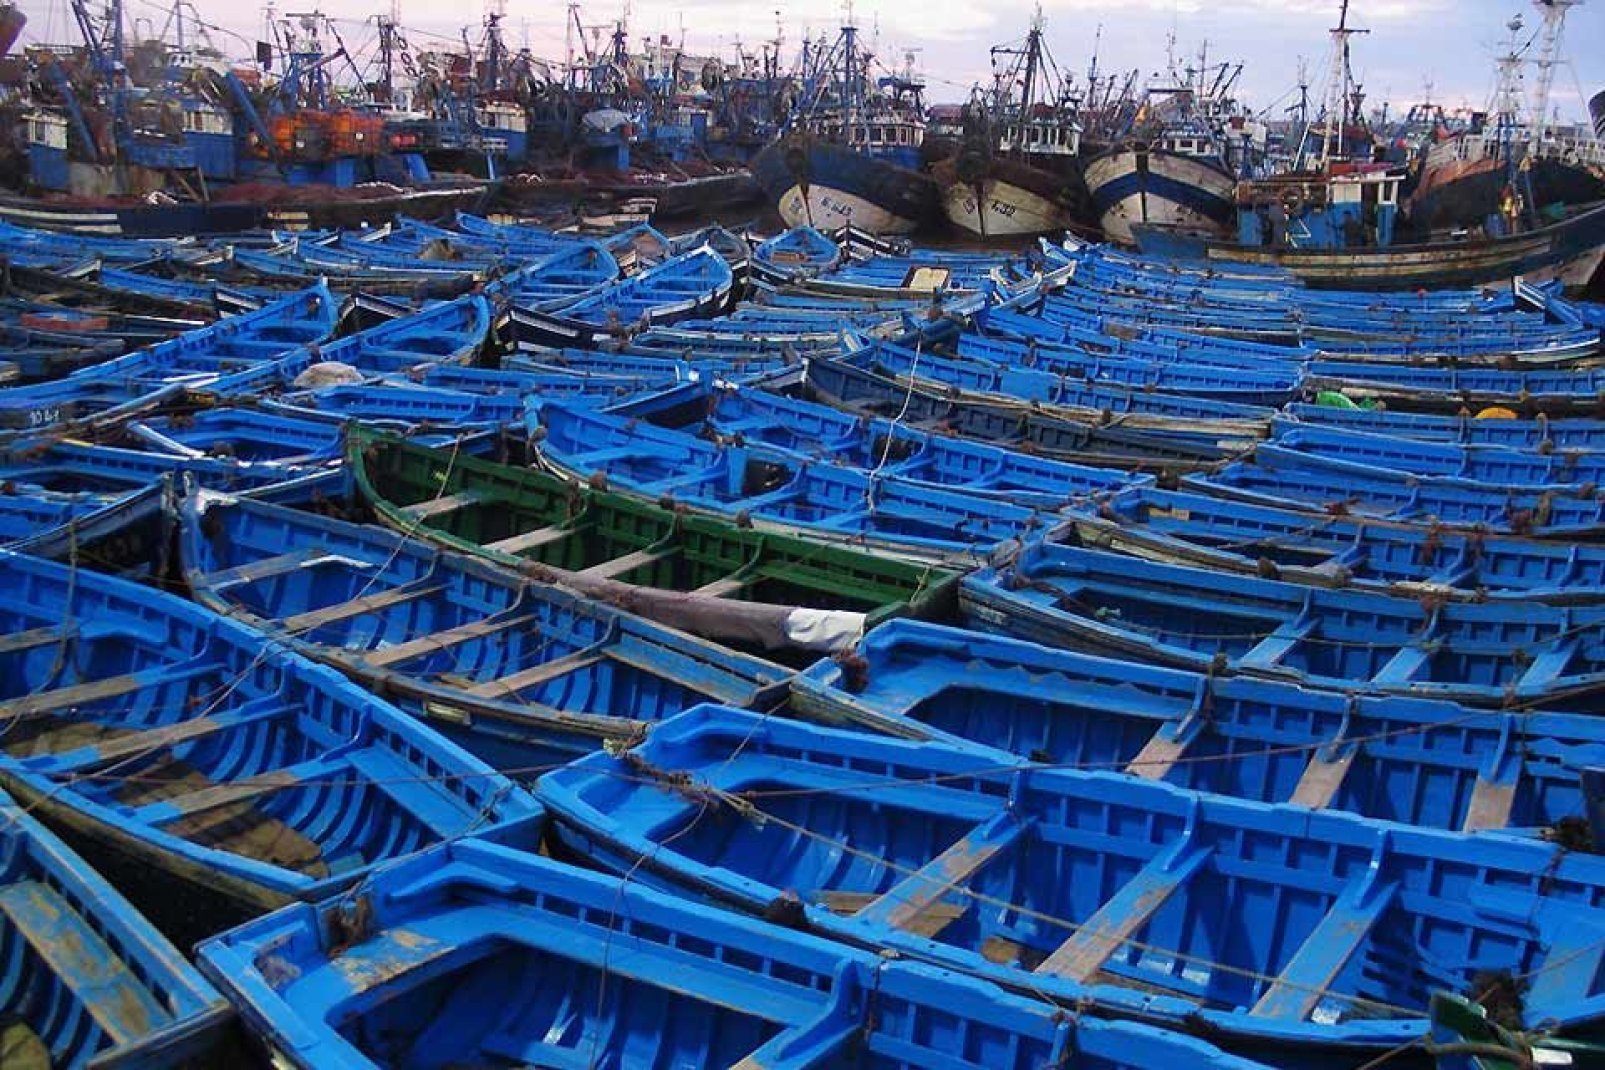 El puerto de pescadores tradicional está completamente pintado de azul, según parece, para confundir a las sardinas.